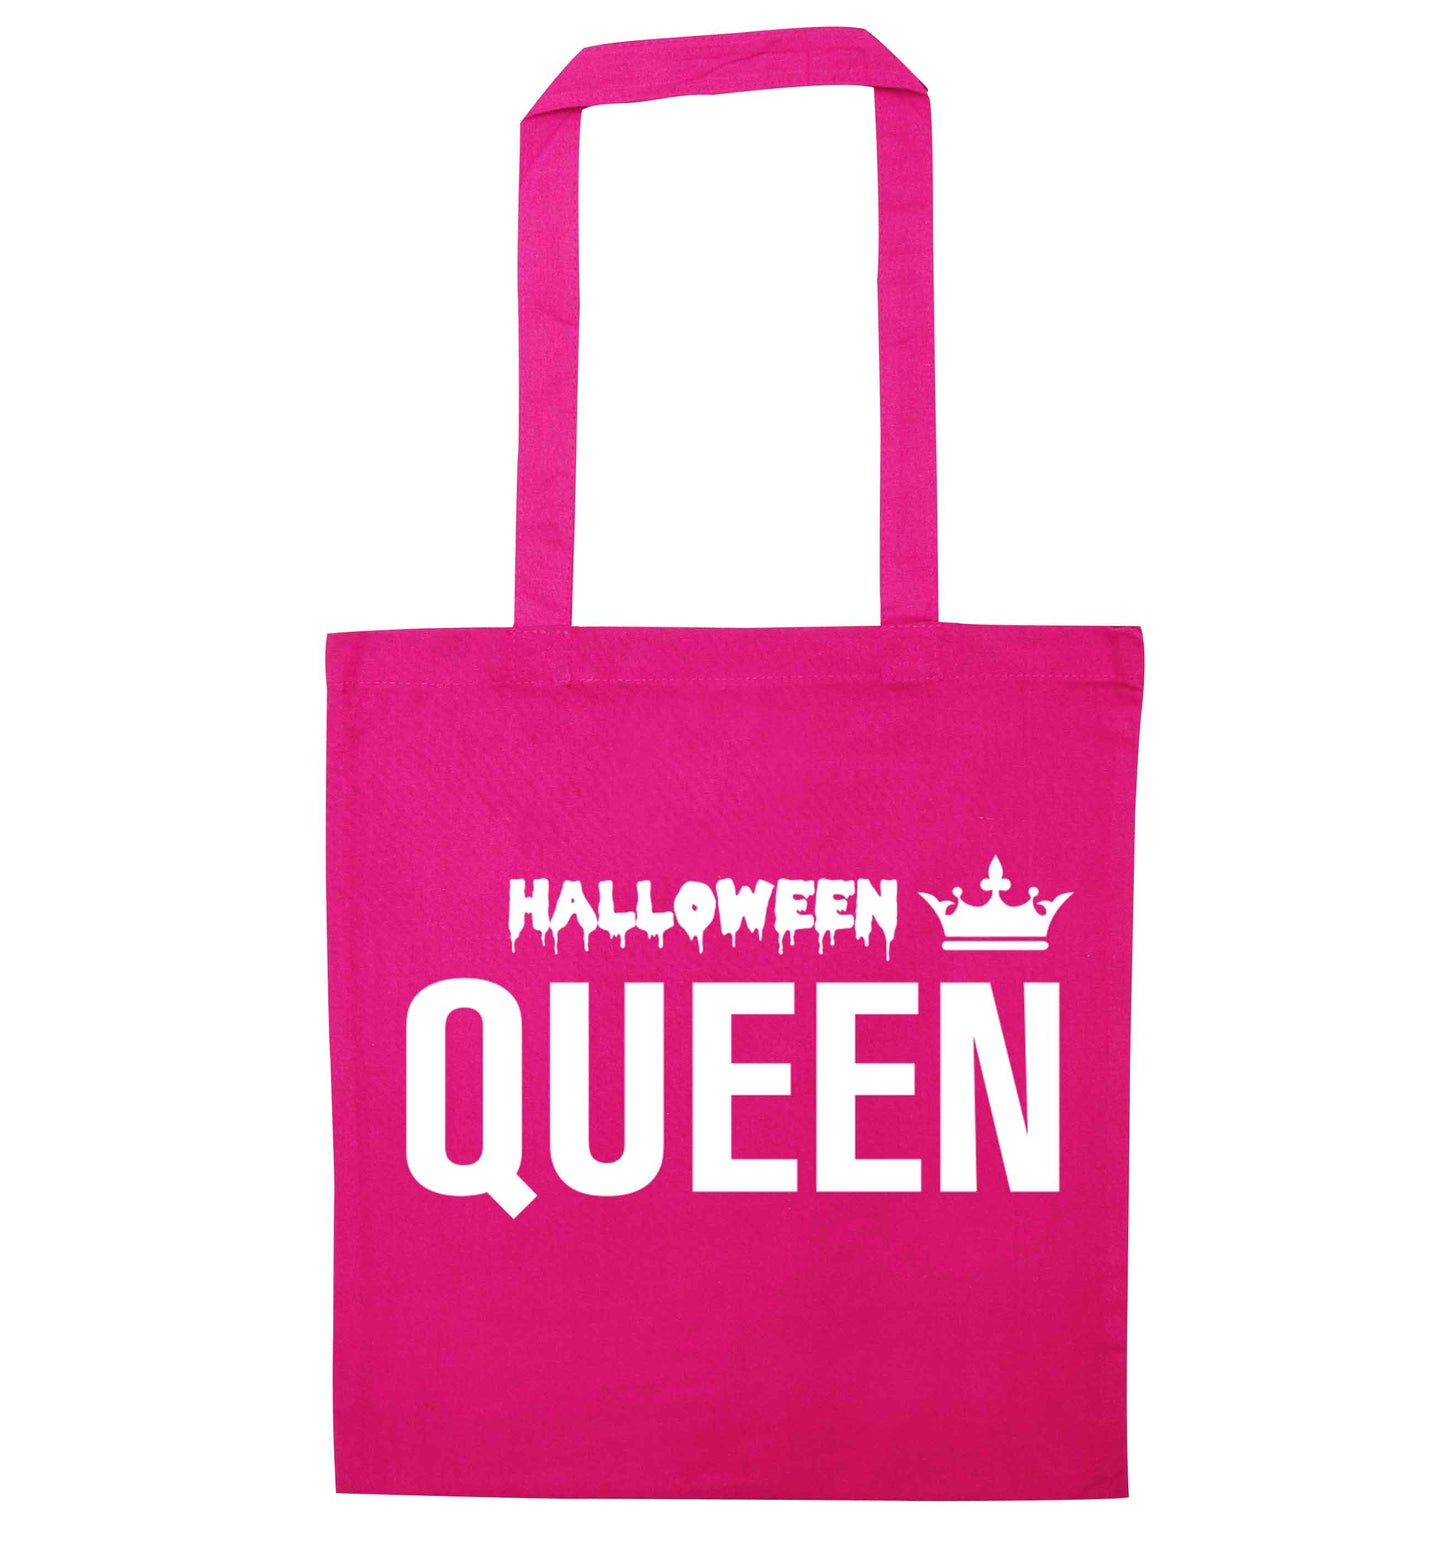 Halloween queen pink tote bag